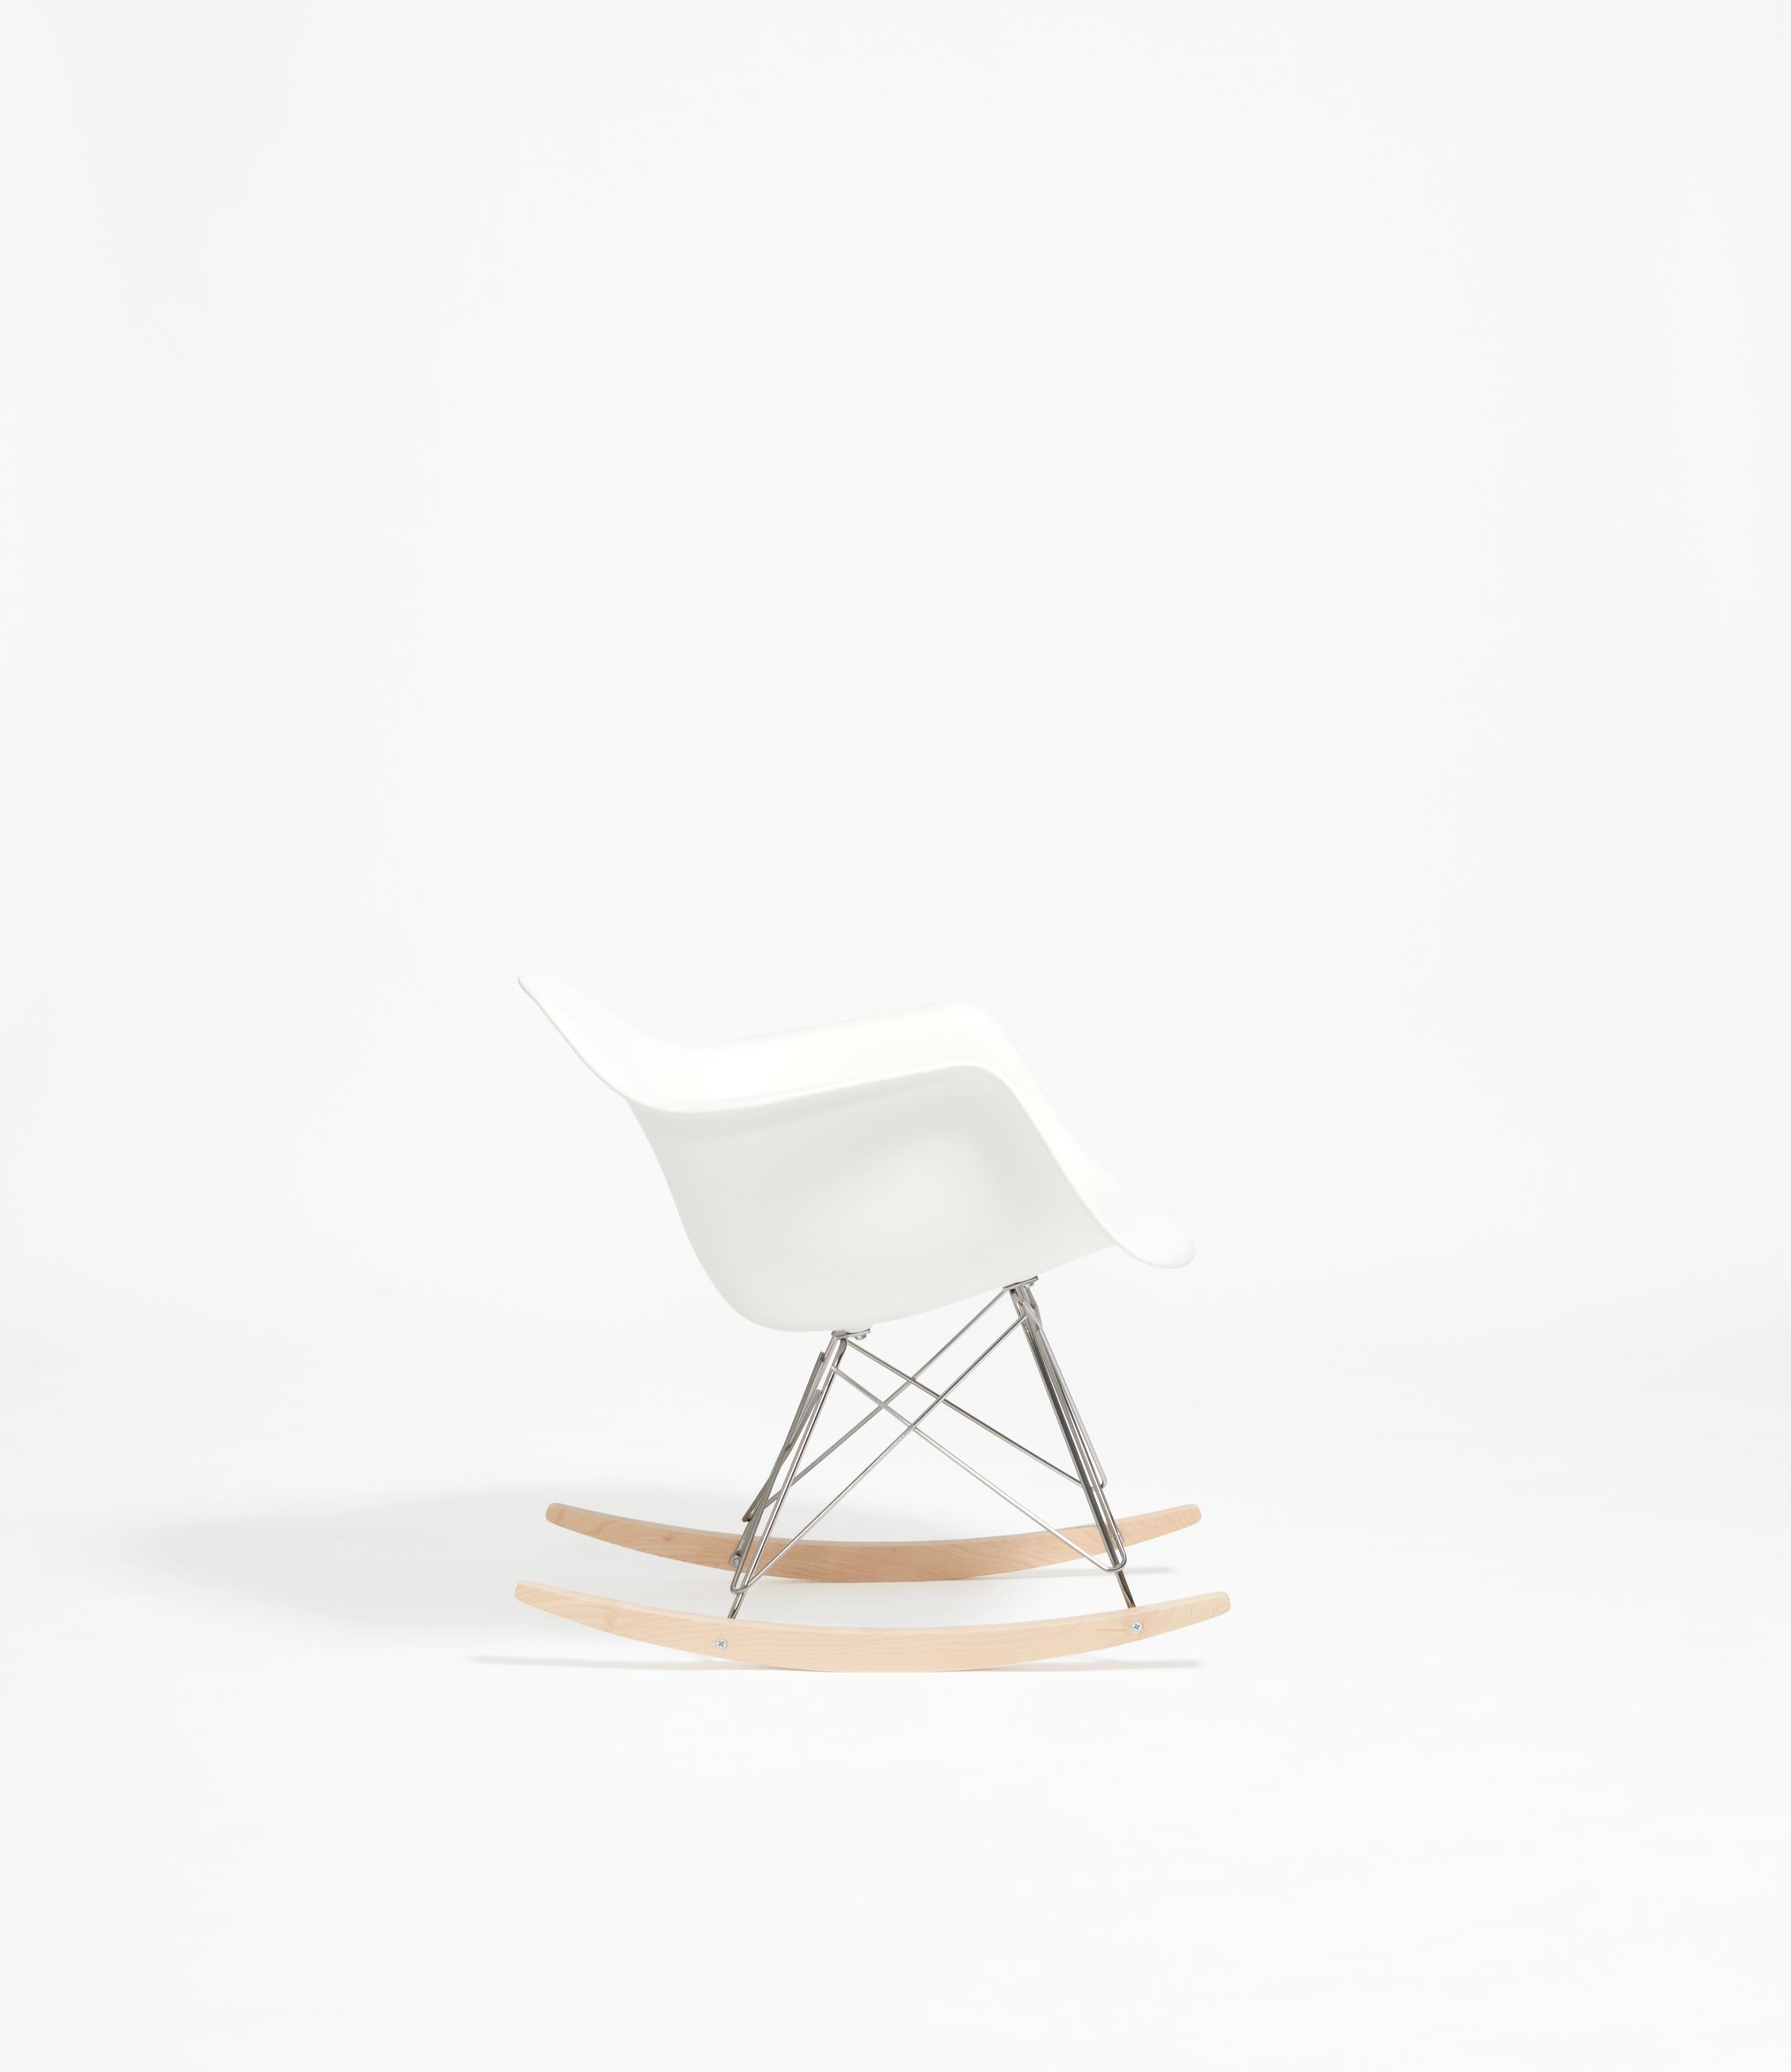 La série de chaises en plastique créées par Charles et Ray Eames pour Vitra fait partie des modèles de meubles américains les plus connus. Parmi cette grande famille de fauteuils, le Rocking Armchair Rod Base (RAR) se distingue par sa coque légère